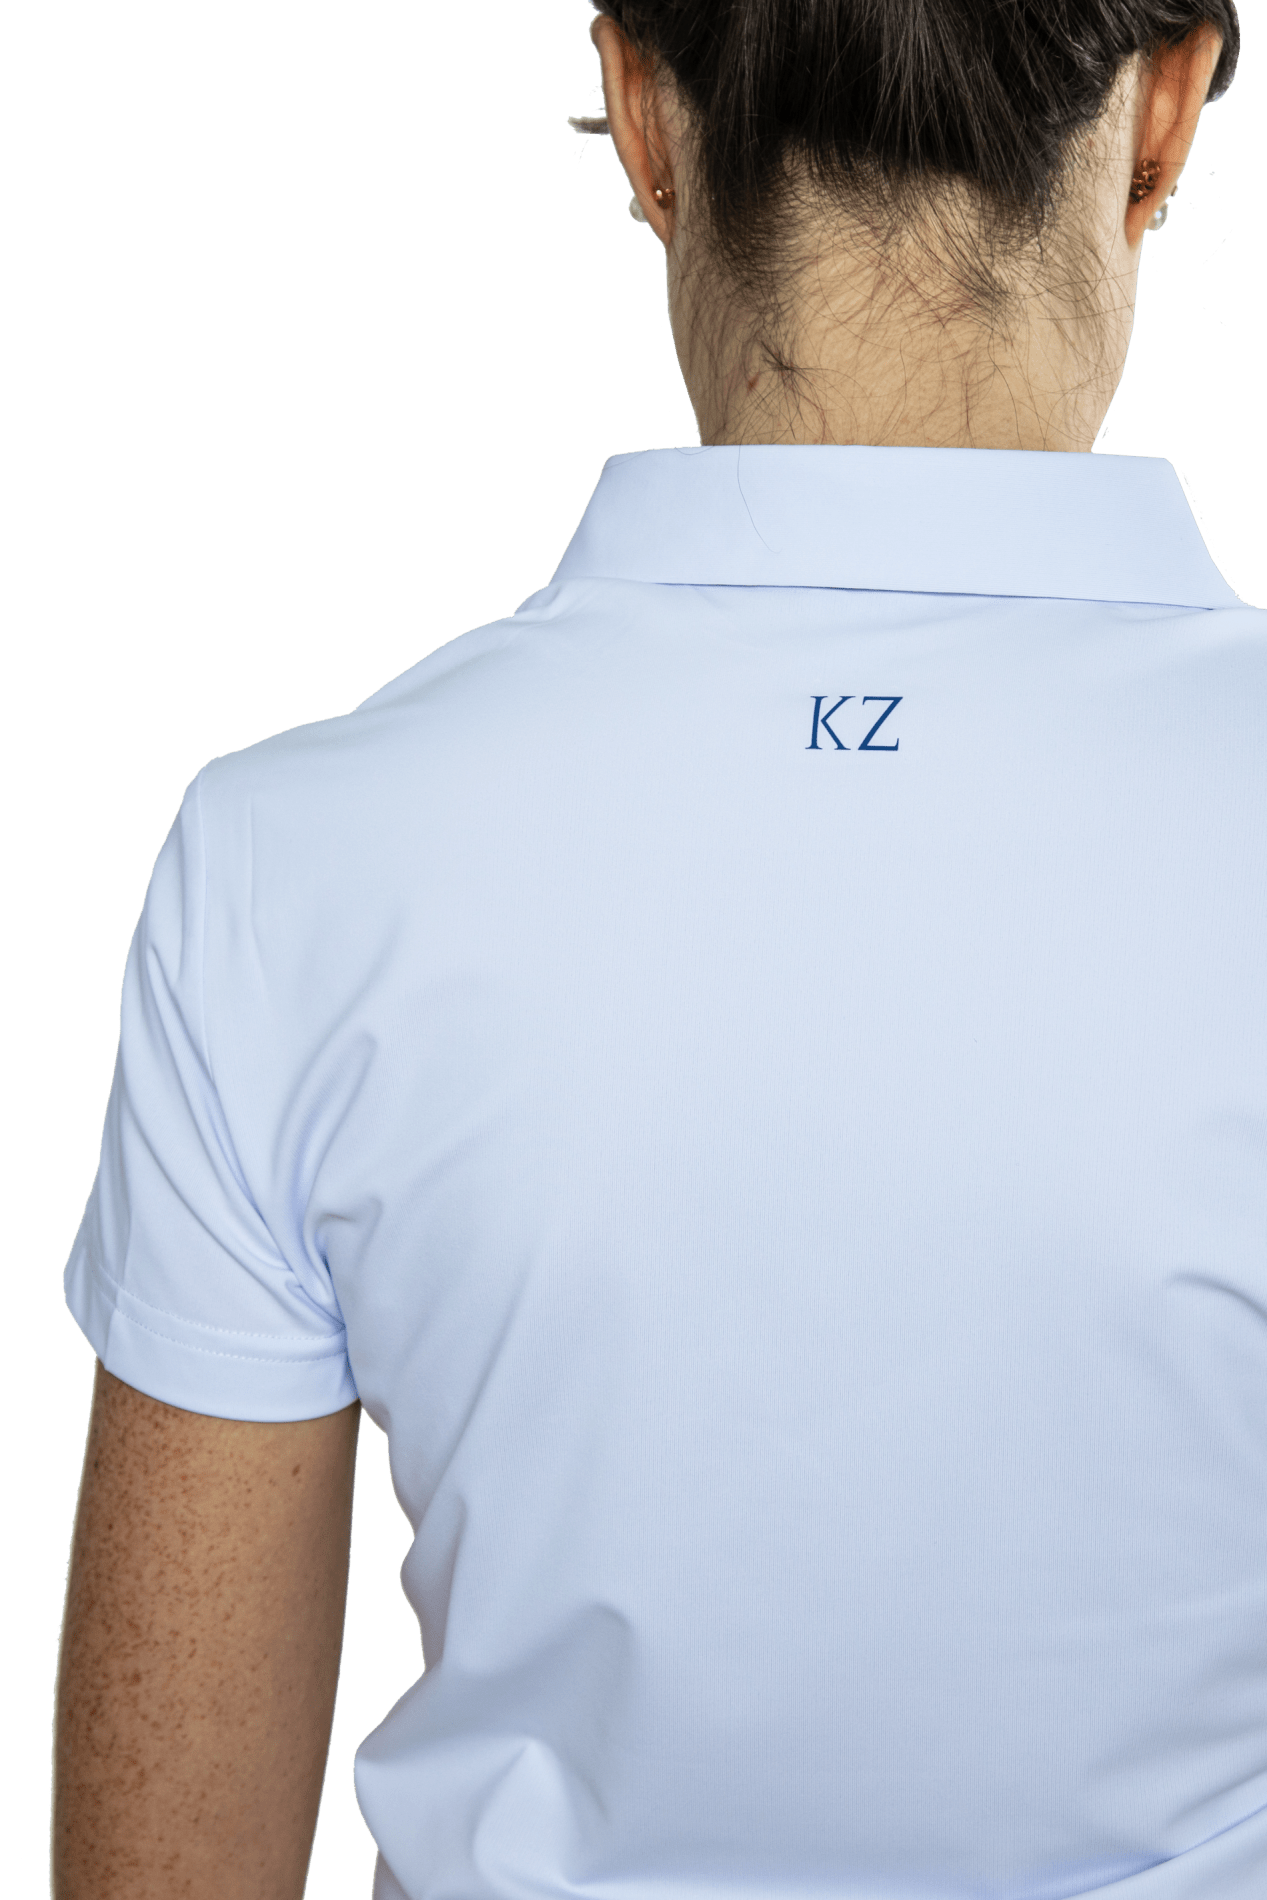 Polo de golf mujer blanco logo azul - KAIZEN KZ ESPAÑA